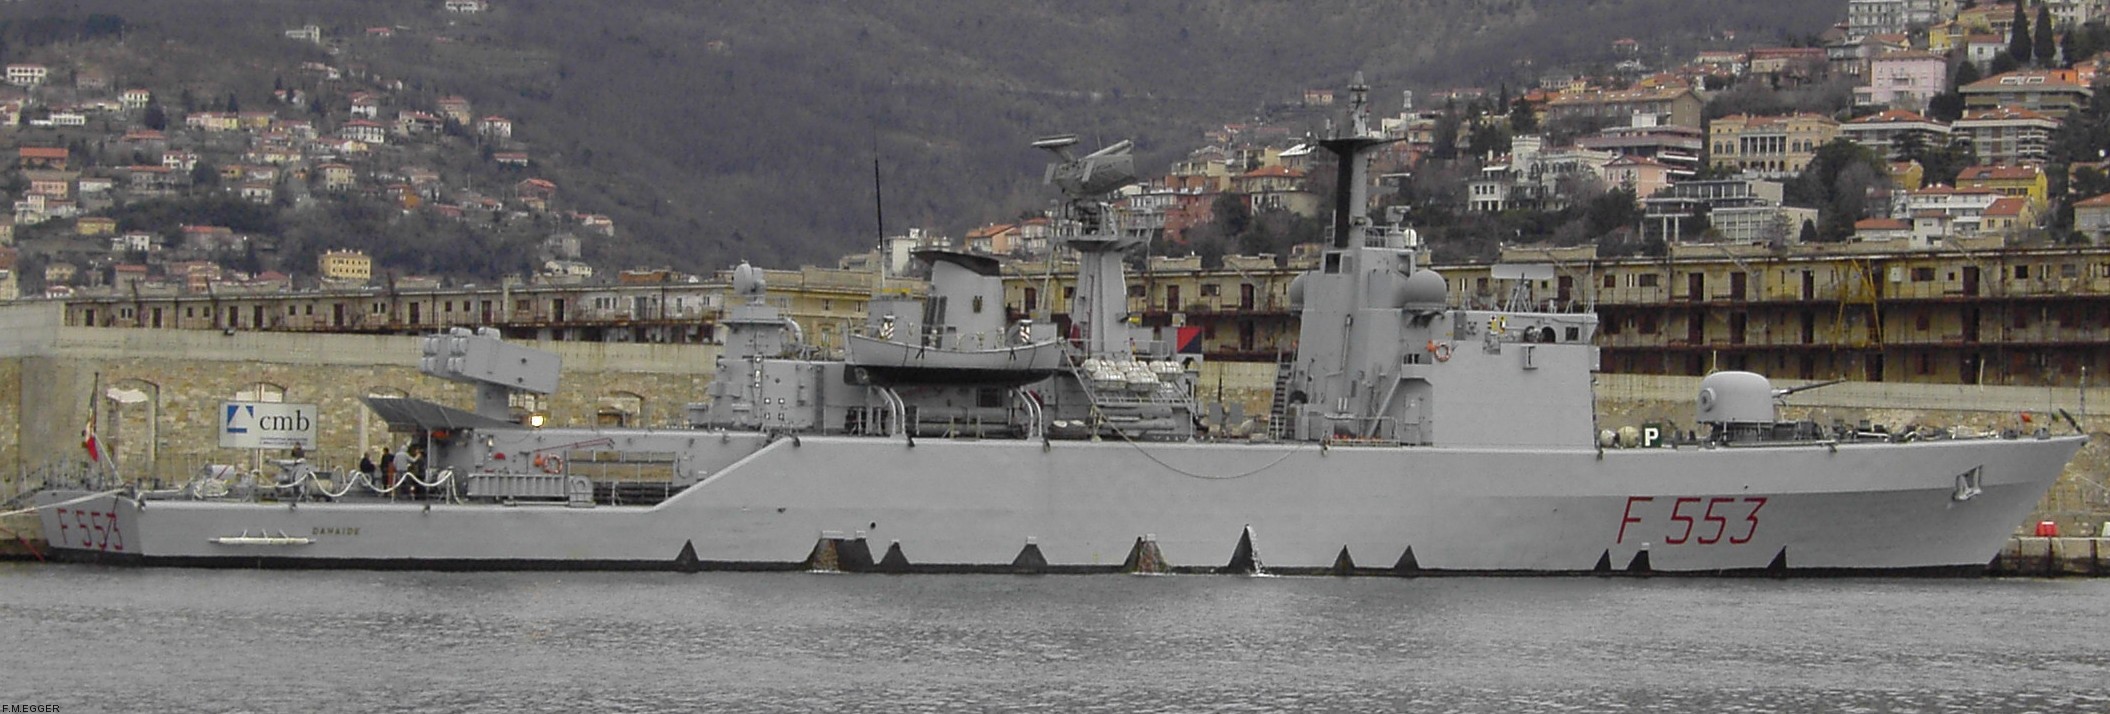 f-553 danaide insignia crest patch badge minerva class corvette italian navy marina militare 03